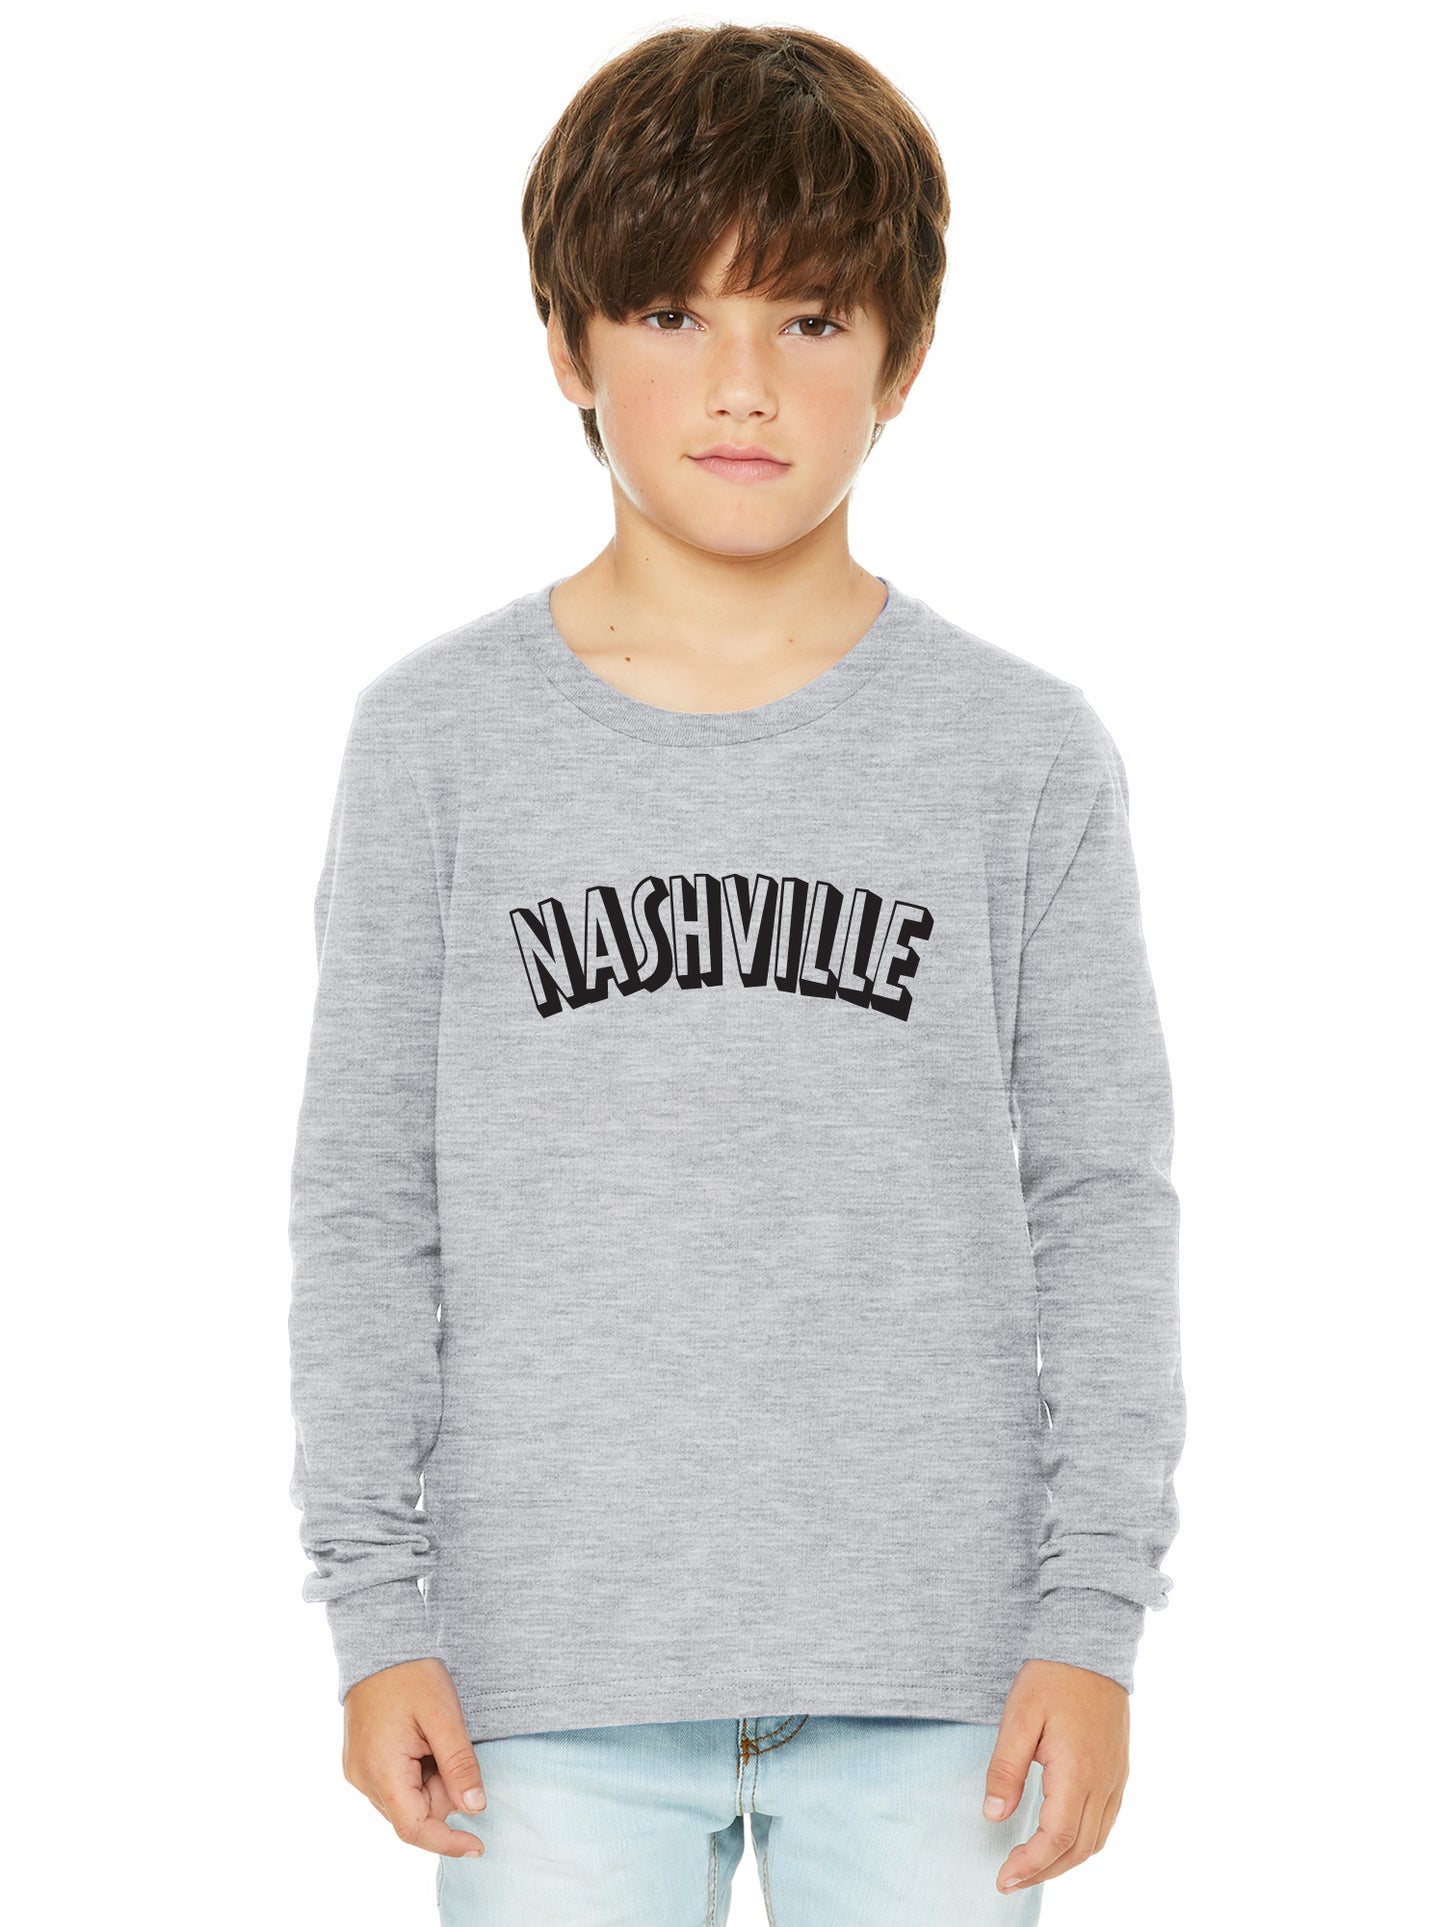 Daxton Youth Long Sleeve Nashville Basic Tshirt